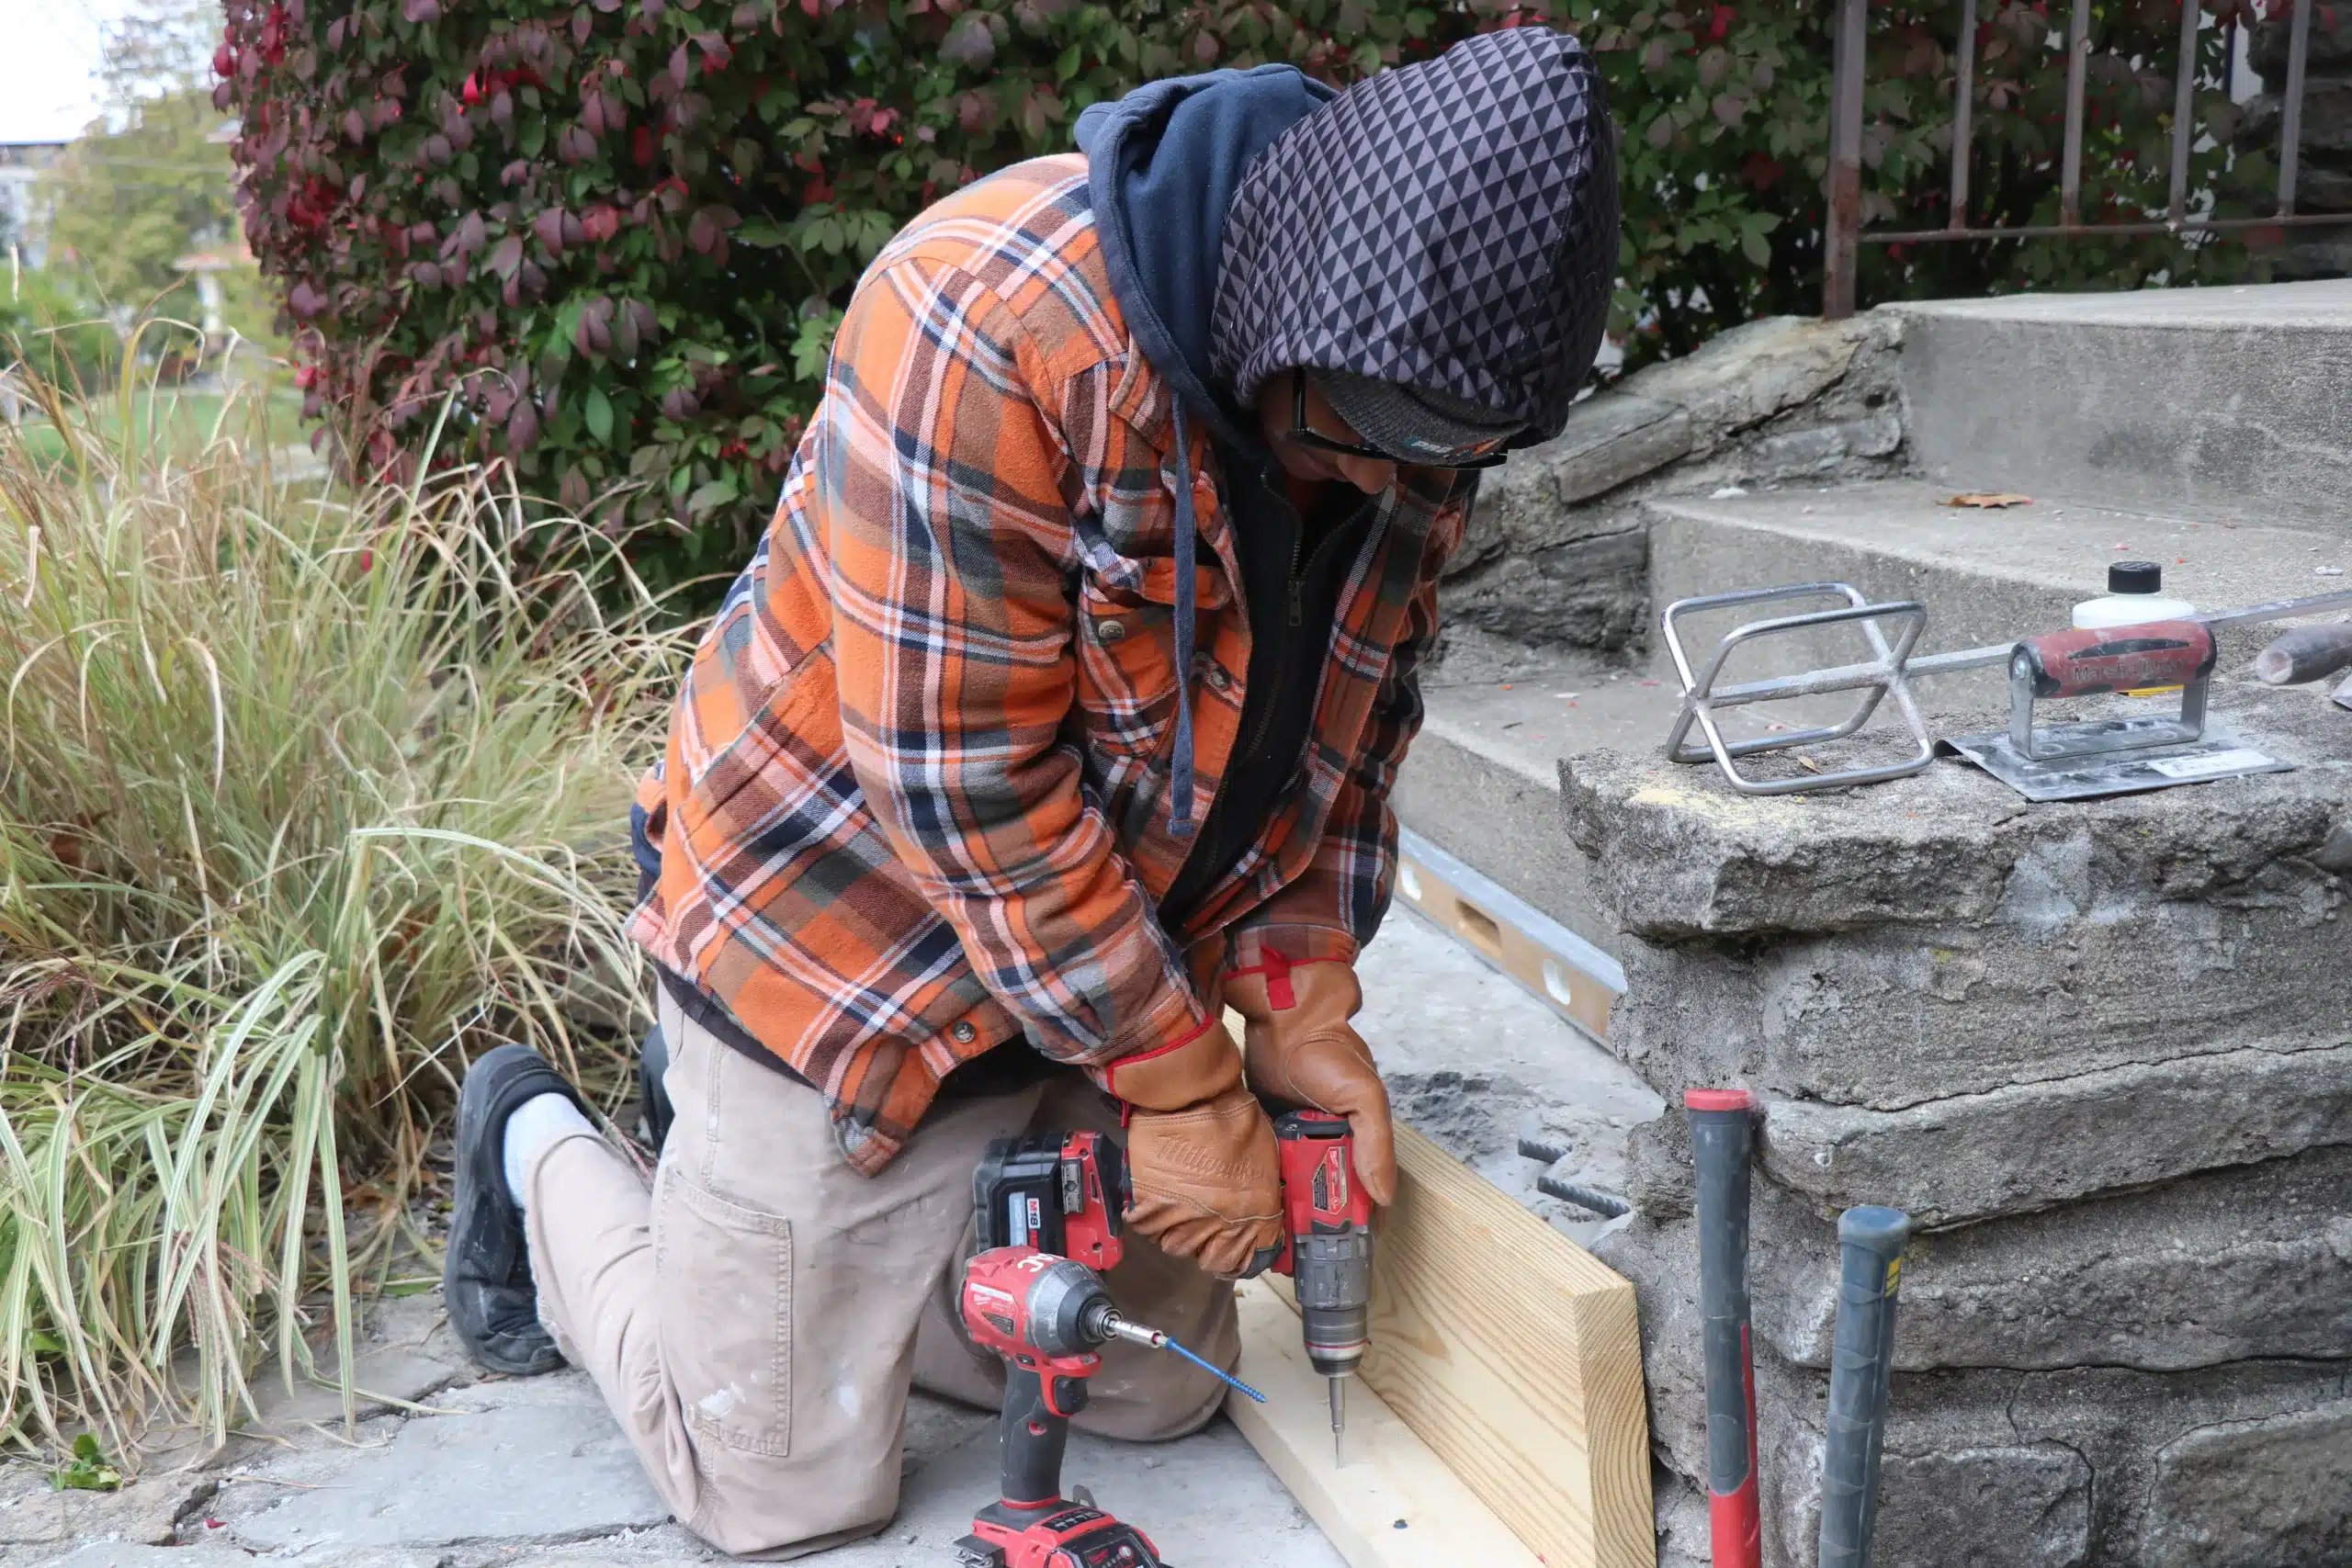 ProMaster Craftsman peforms a Cincinnati handyman service, concrete repair.